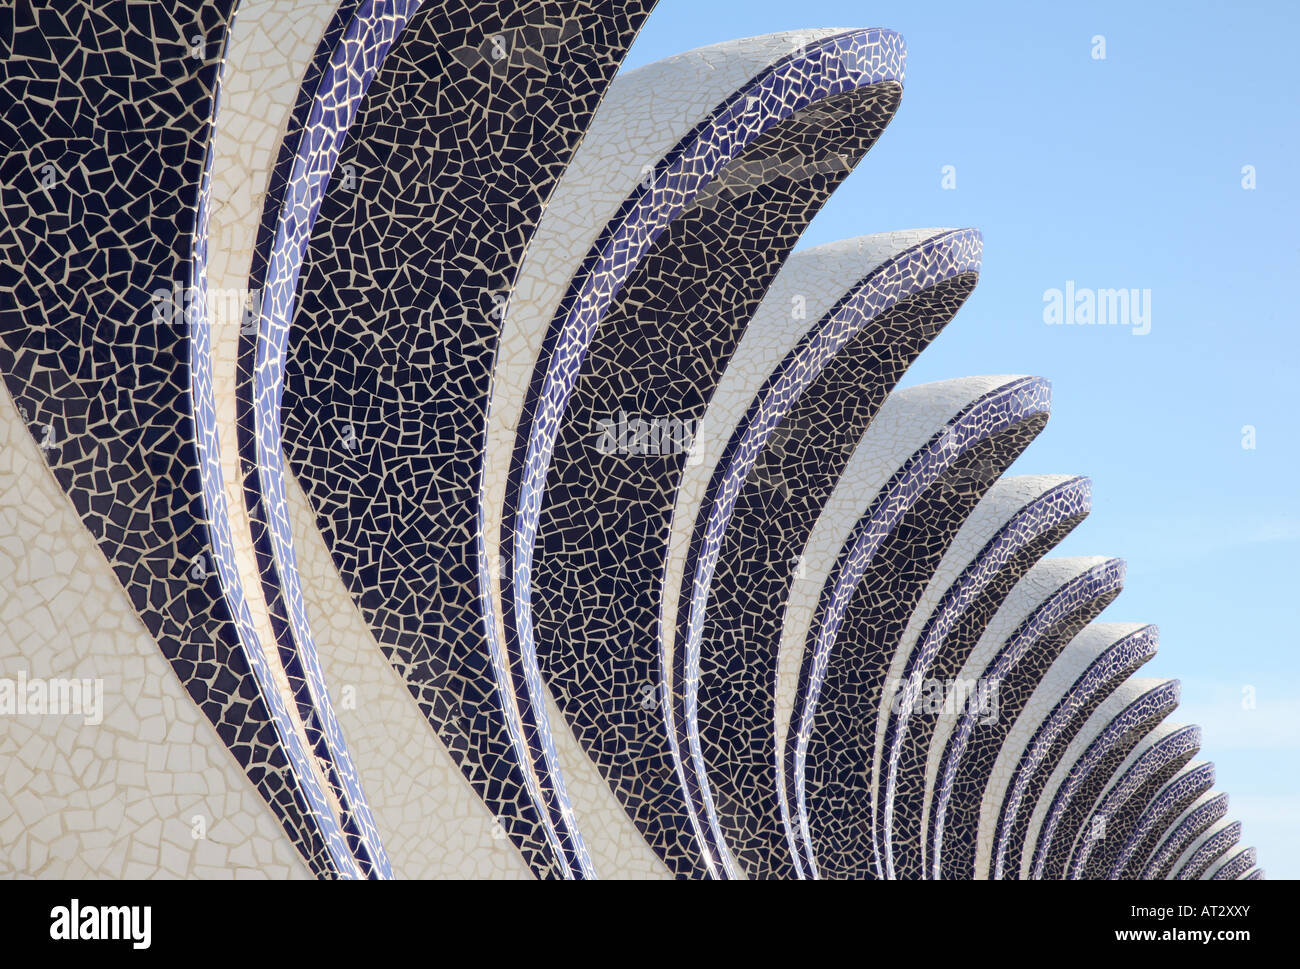 La Ville d'Arts et Sciences par Calatrava, Valencia, Espagne Banque D'Images